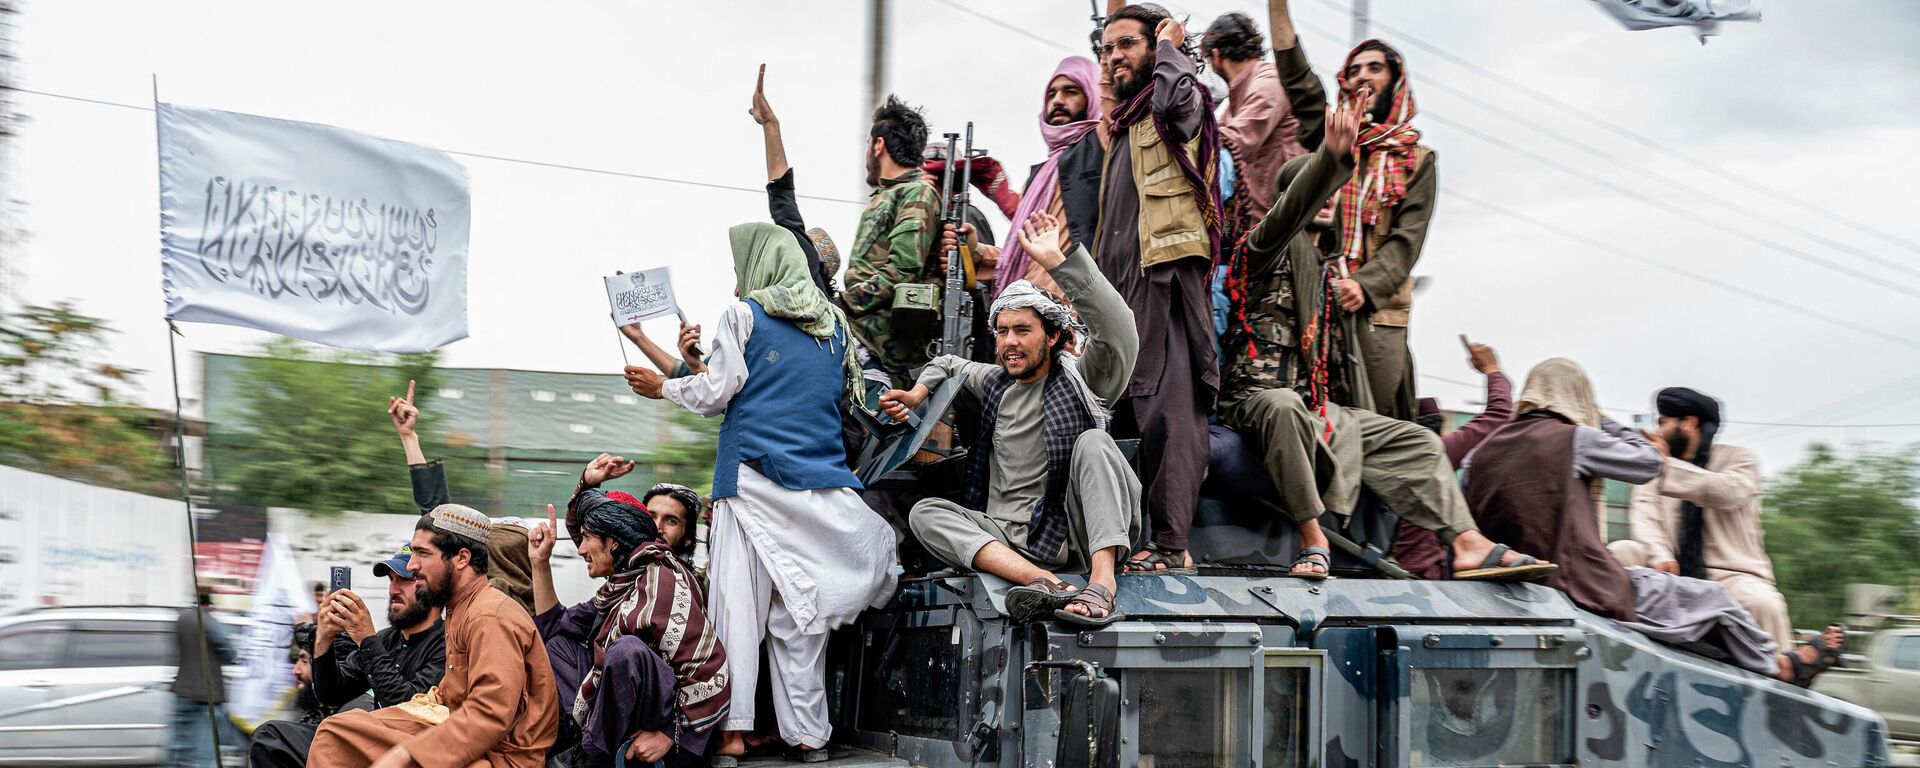 Боевики Талибана (движение Талибан находится под санкциями ООН за террористическую деятельность) праздную год прихода власти, Каблу, Афганистан - Sputnik International, 1920, 13.09.2022